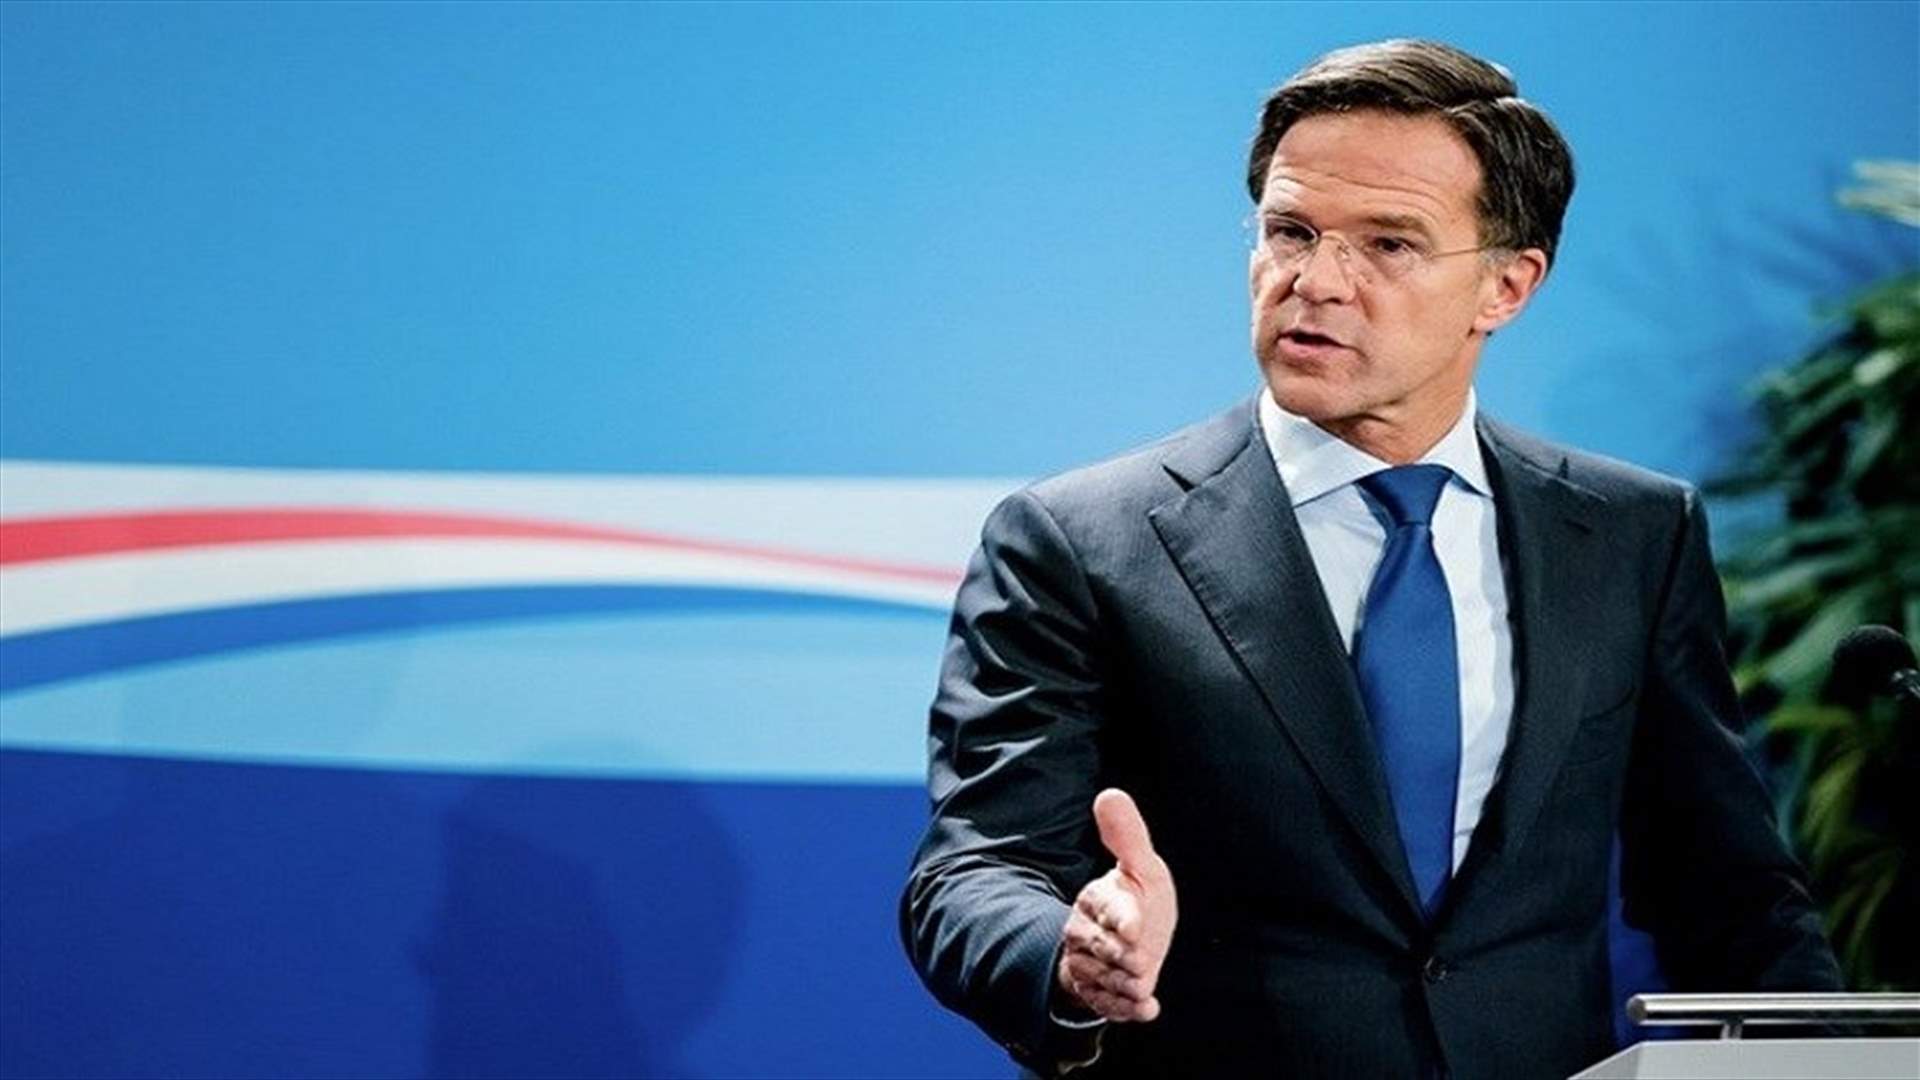 رئيس الوزراء الهولندي يقدم اعتذارات رسمية باسم الدولة عن ماضي العبودية